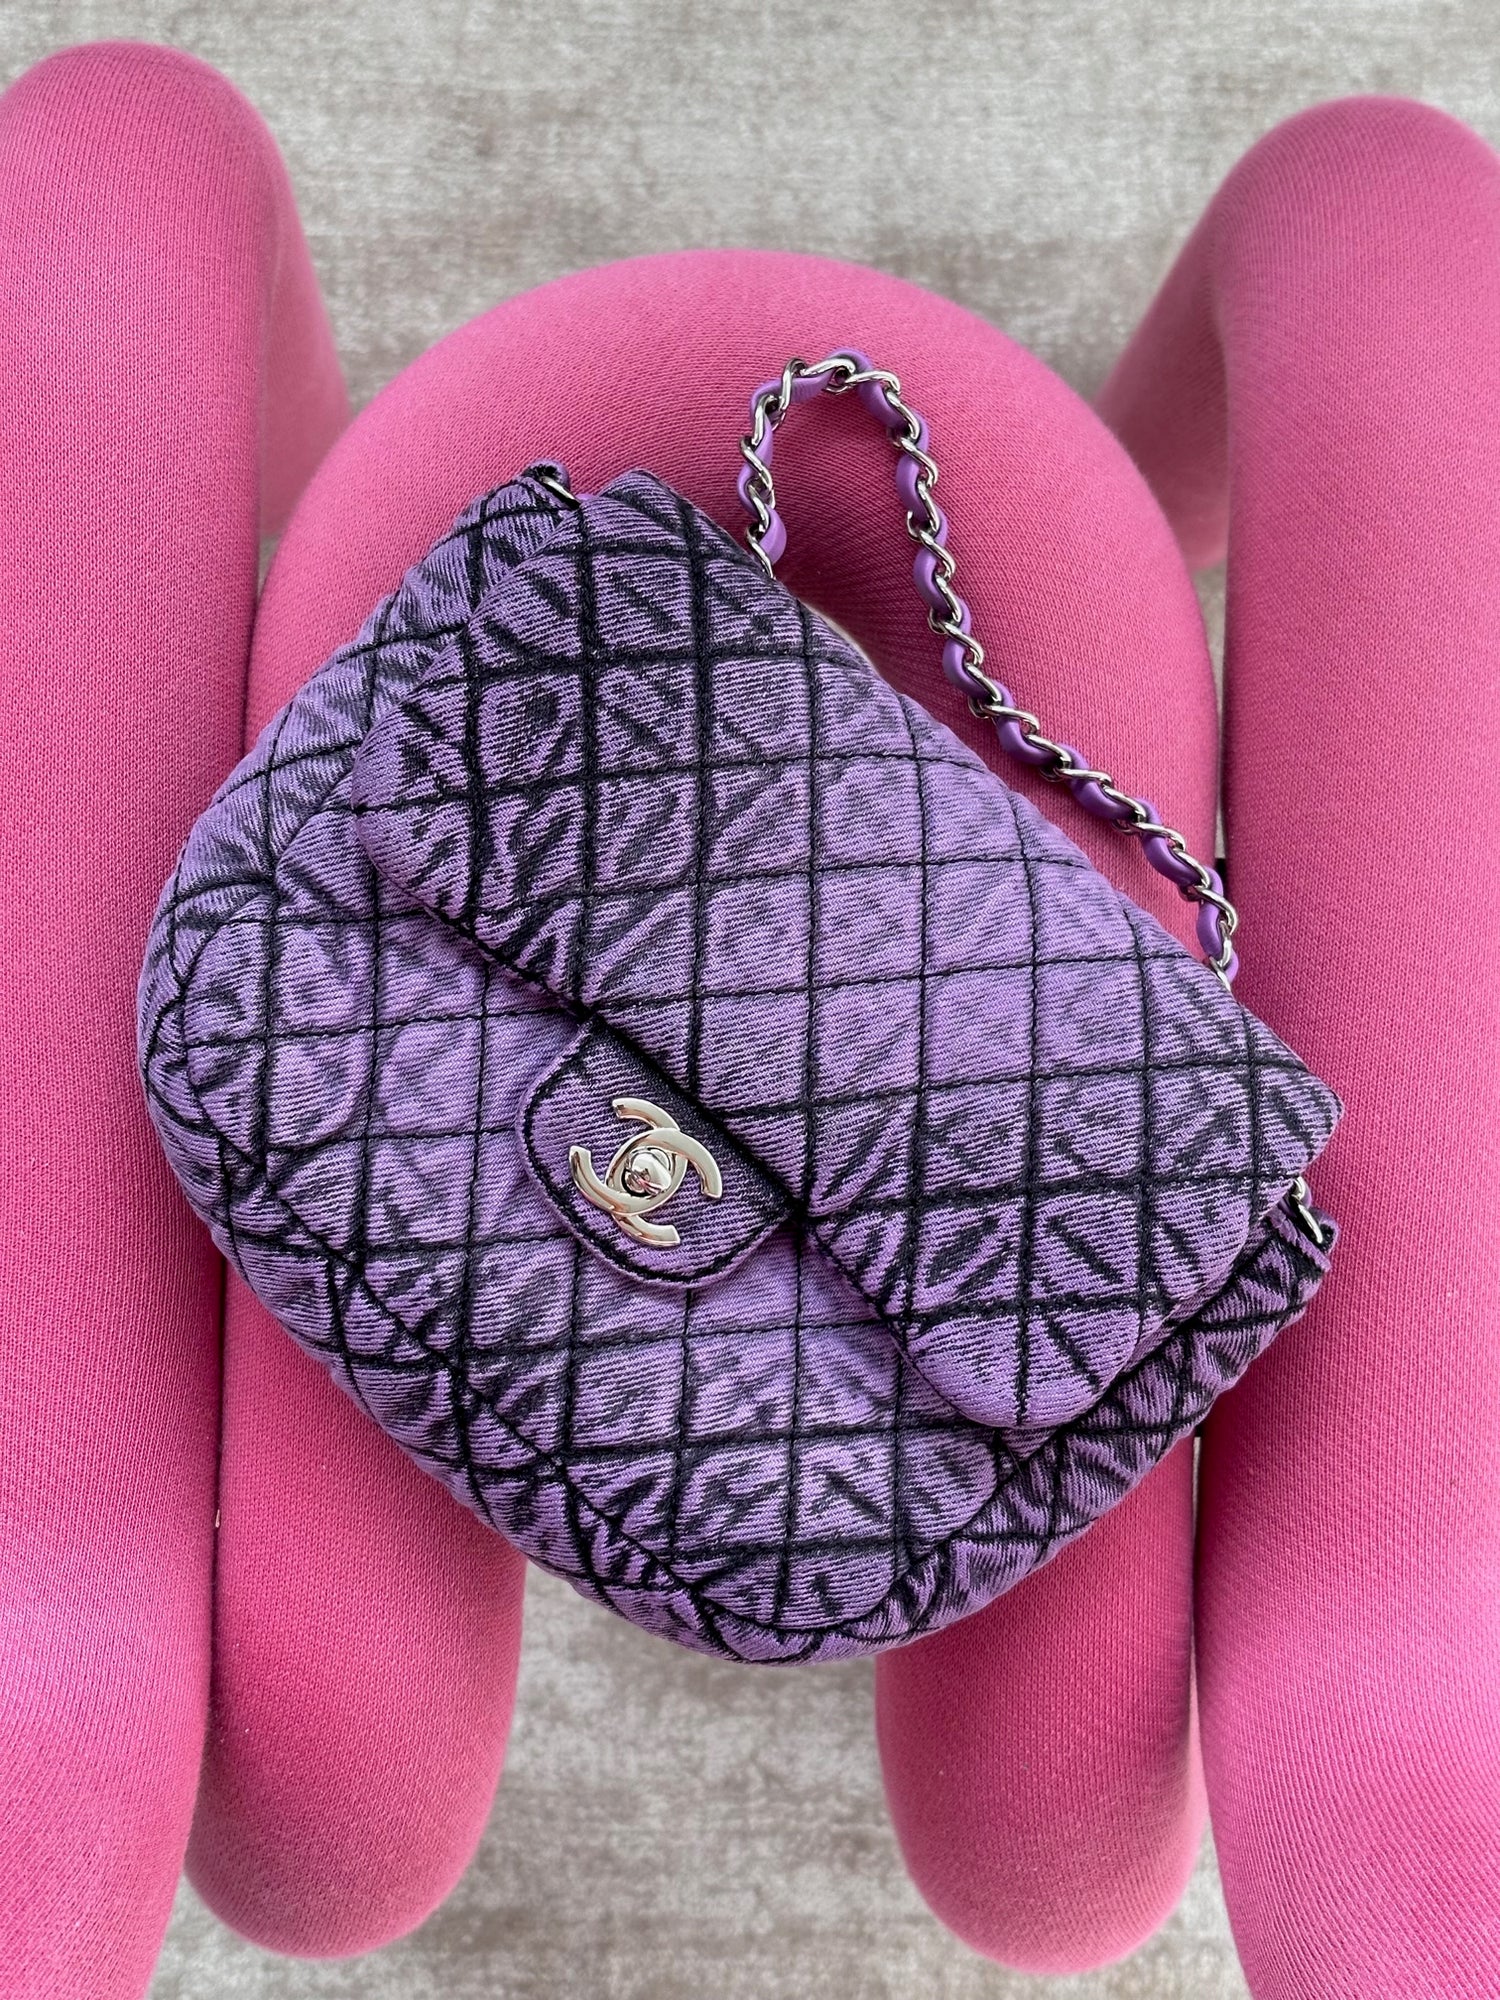  Chanel, Pre-Loved Pink Quilted Satin 'CC' Shoulder Bag